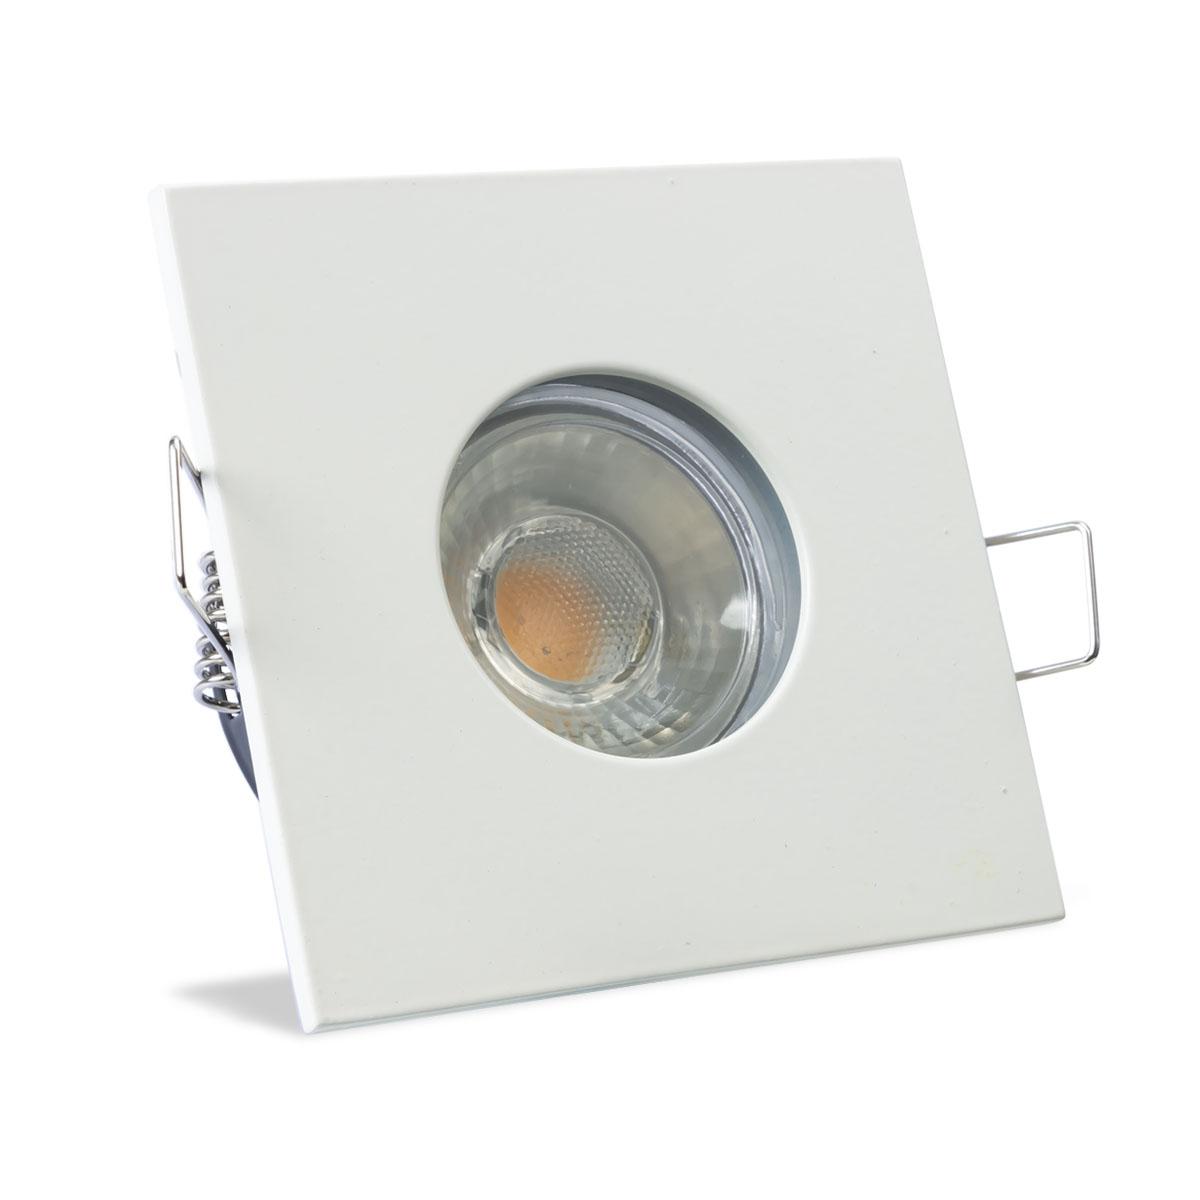 Einbauspot IP65 eckig - Abdeckring:  weiß - LED Leuchtmittel:  GU10 5W warmweiß dimmbar